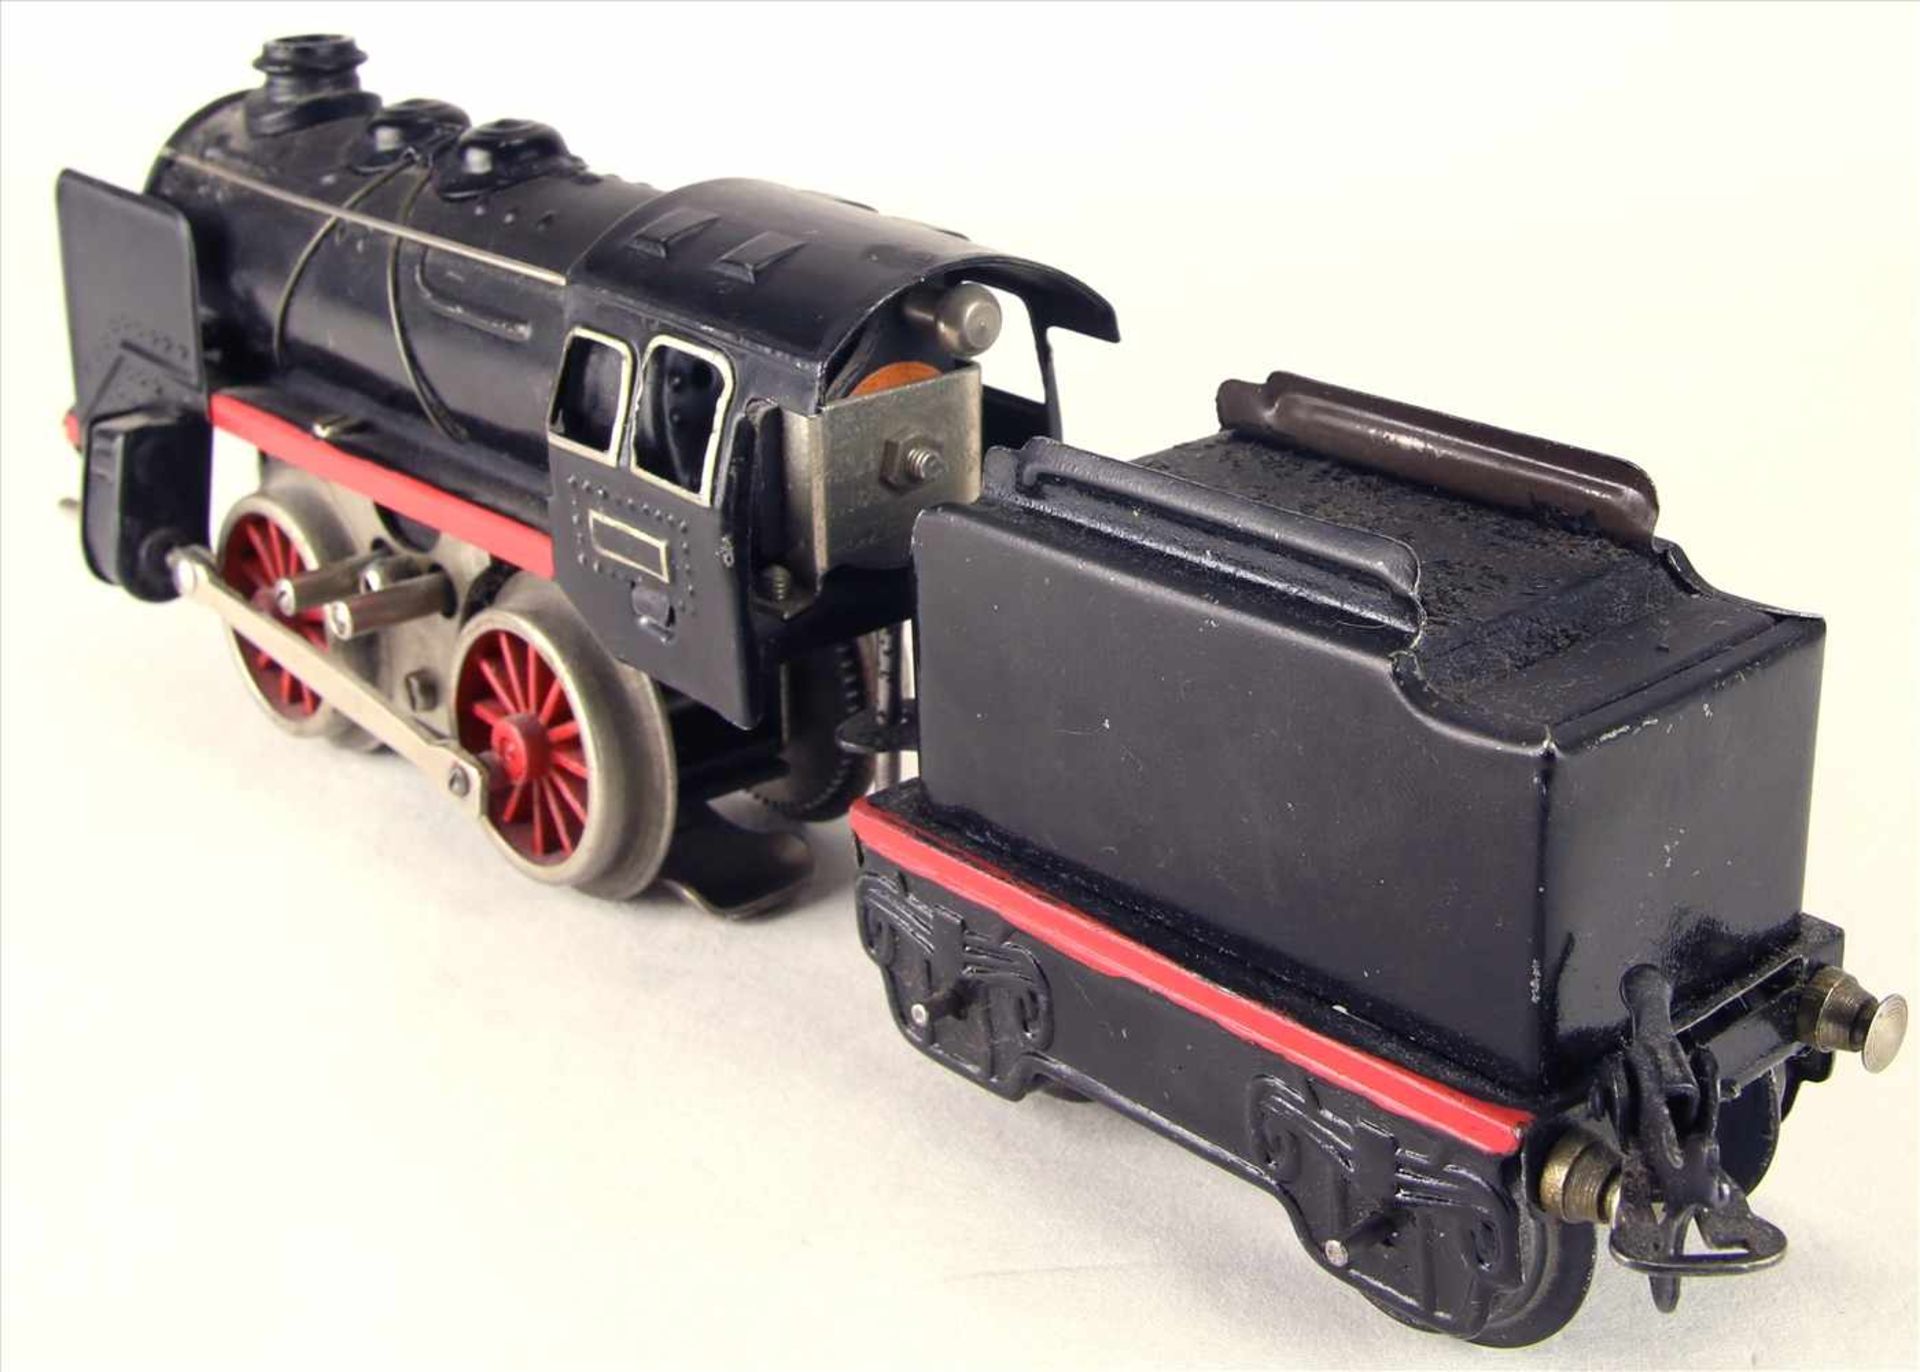 Dampflokomotive Spur 0Karl Bub späte 1940-er Jahre. Dampflok mit Tender. Elektroantrieb. - Bild 4 aus 5